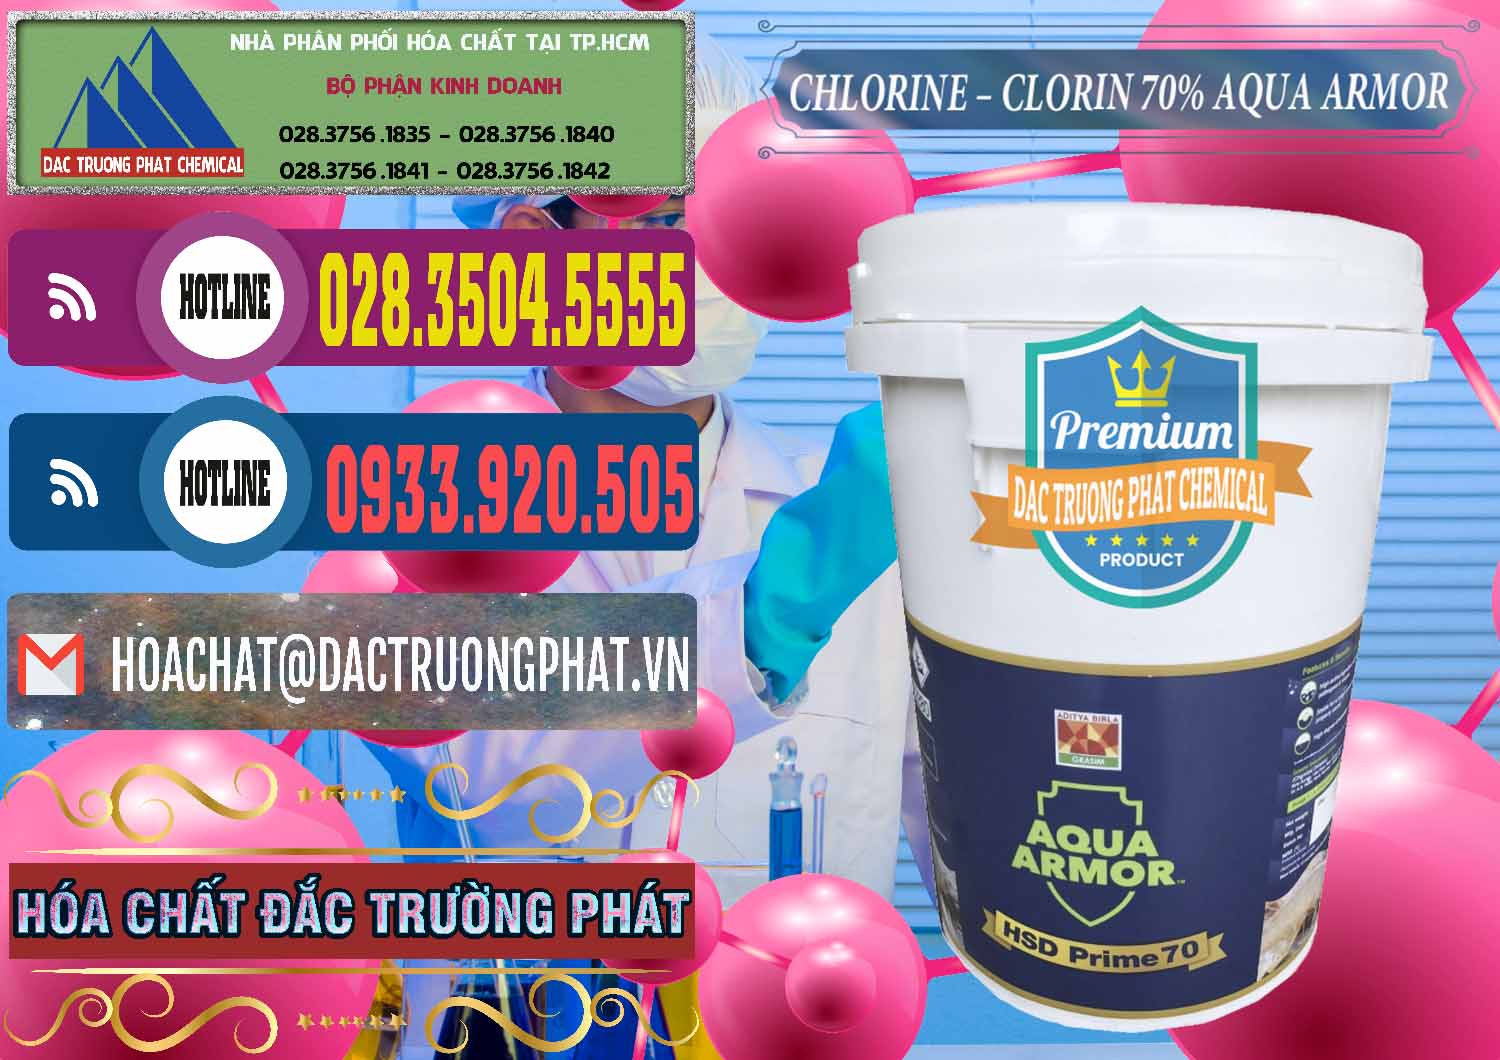 Nơi chuyên bán - cung cấp Chlorine – Clorin 70% Aqua Armor Aditya Birla Grasim Ấn Độ India - 0241 - Chuyên cung cấp _ phân phối hóa chất tại TP.HCM - muabanhoachat.com.vn